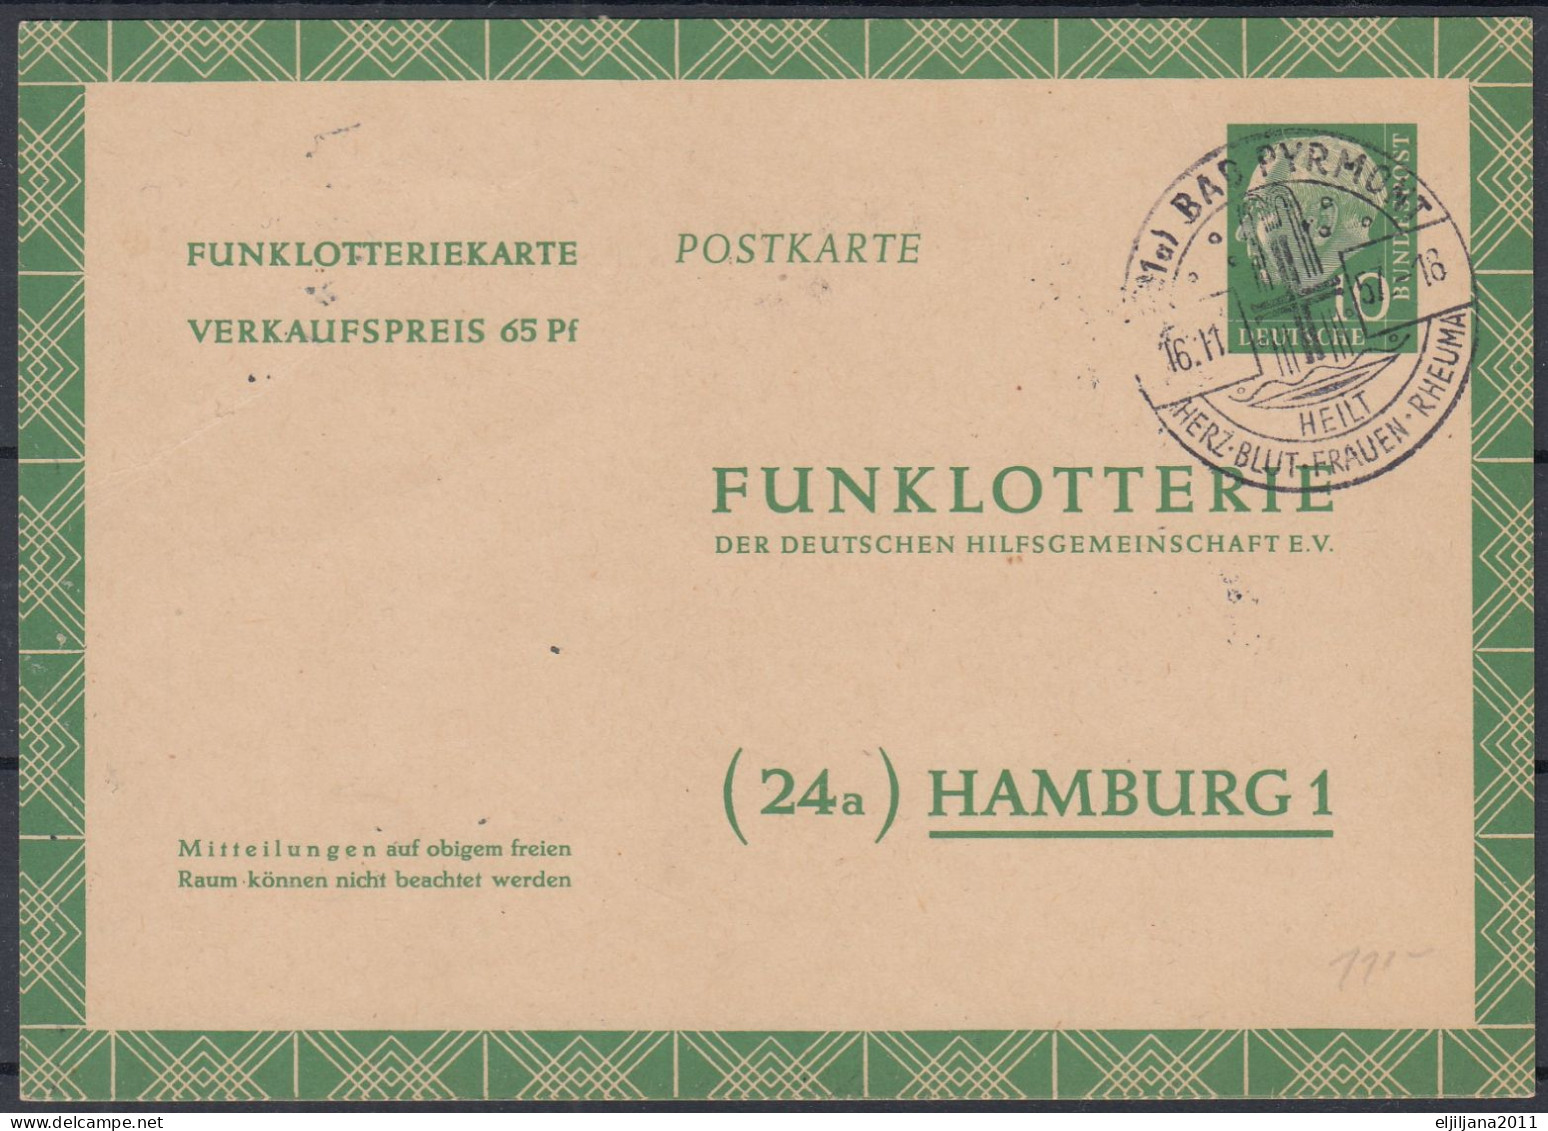 ⁕ Germany 1957 Deutsche BundesPost ⁕ FUNKLOTTERIE (24a) Hamburg 1 ⁕ Bad Pyrmont Postmark ⁕ Stationery Postcard - Postkarten - Gebraucht